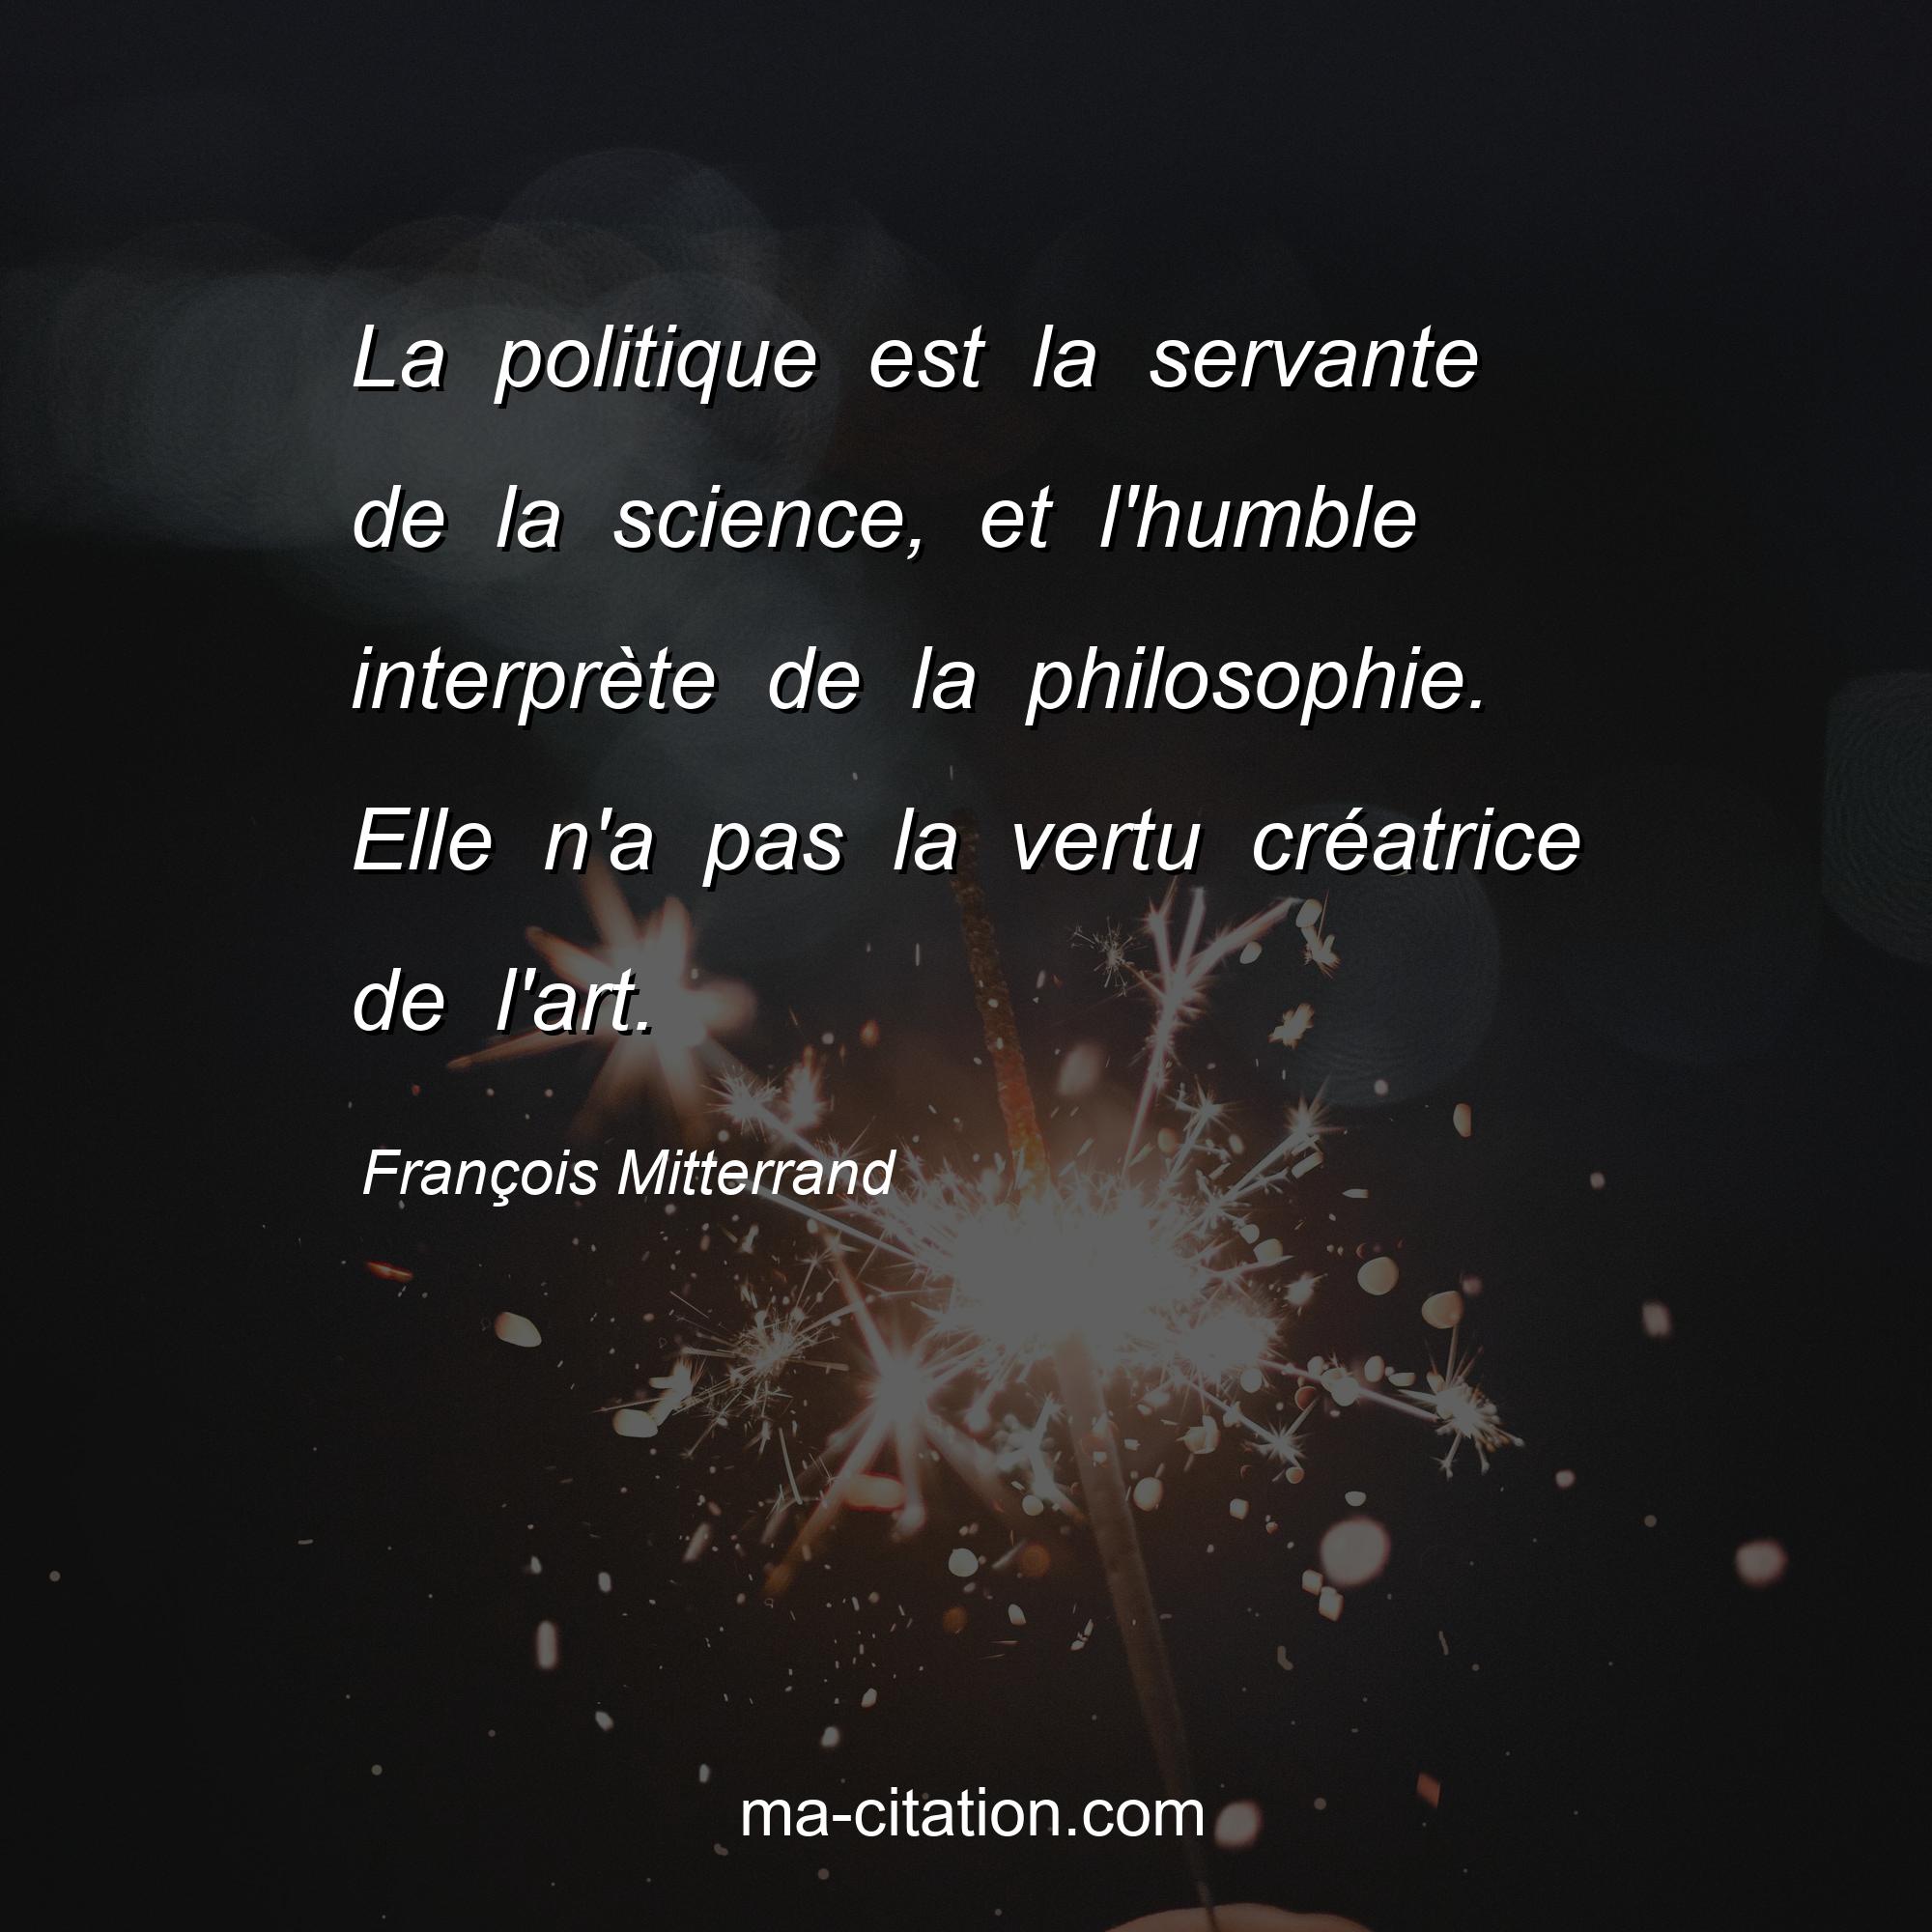 François Mitterrand : La politique est la servante de la science, et l'humble interprète de la philosophie. Elle n'a pas la vertu créatrice de l'art.